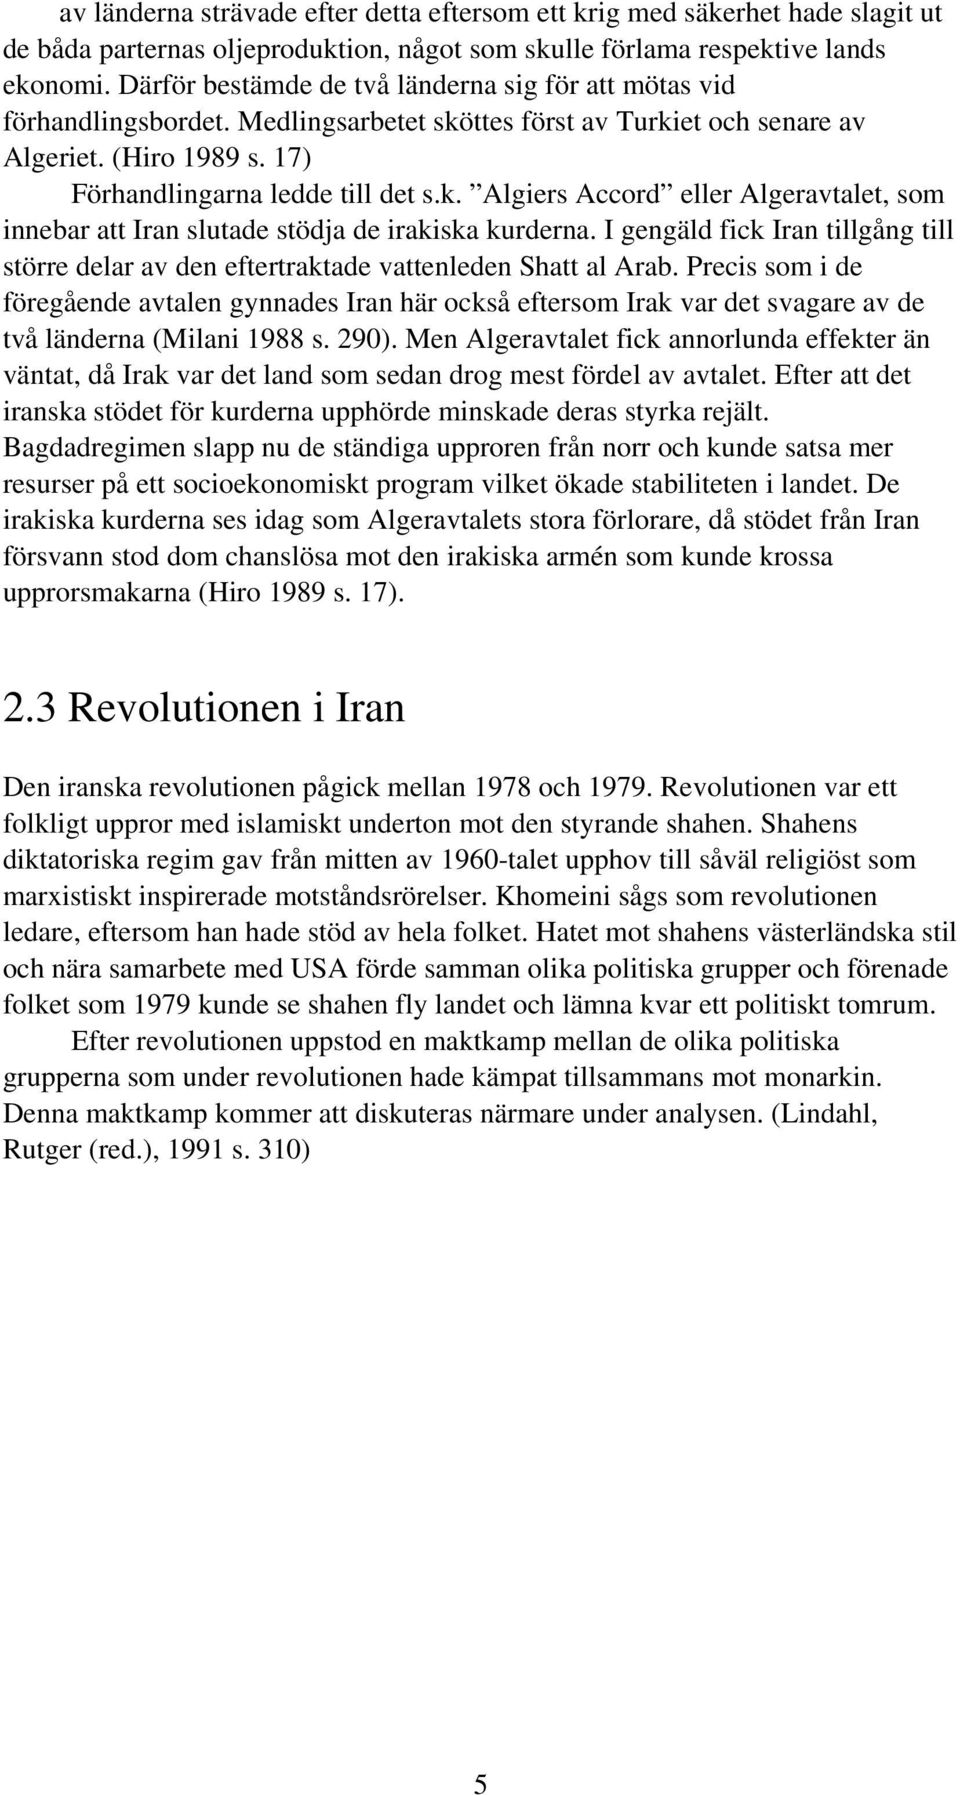 I gengäld fick Iran tillgång till större delar av den eftertraktade vattenleden Shatt al Arab.